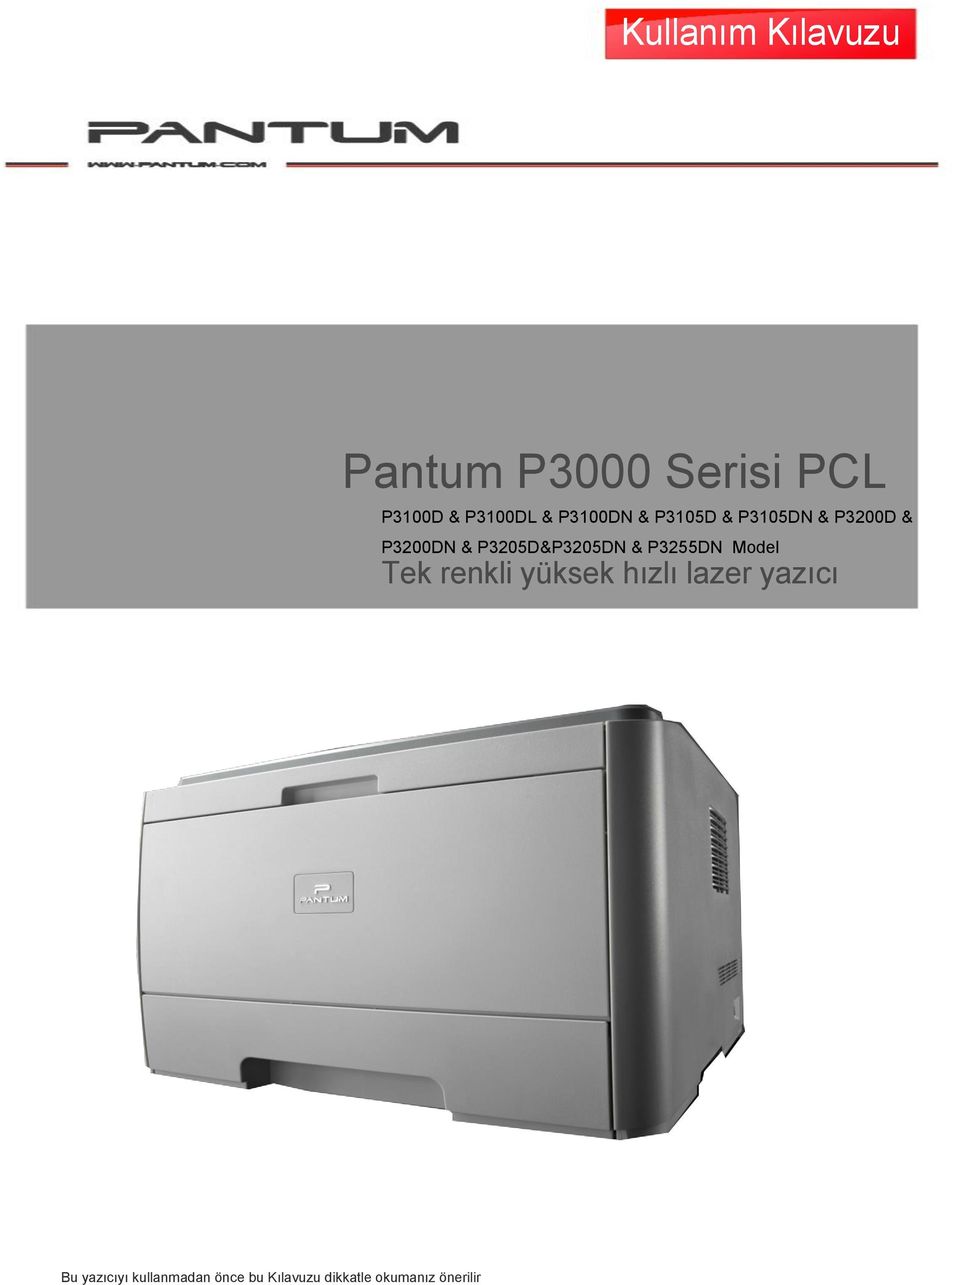 P3205D&P3205DN & P3255DN Model Tek renkli yüksek hızlı lazer